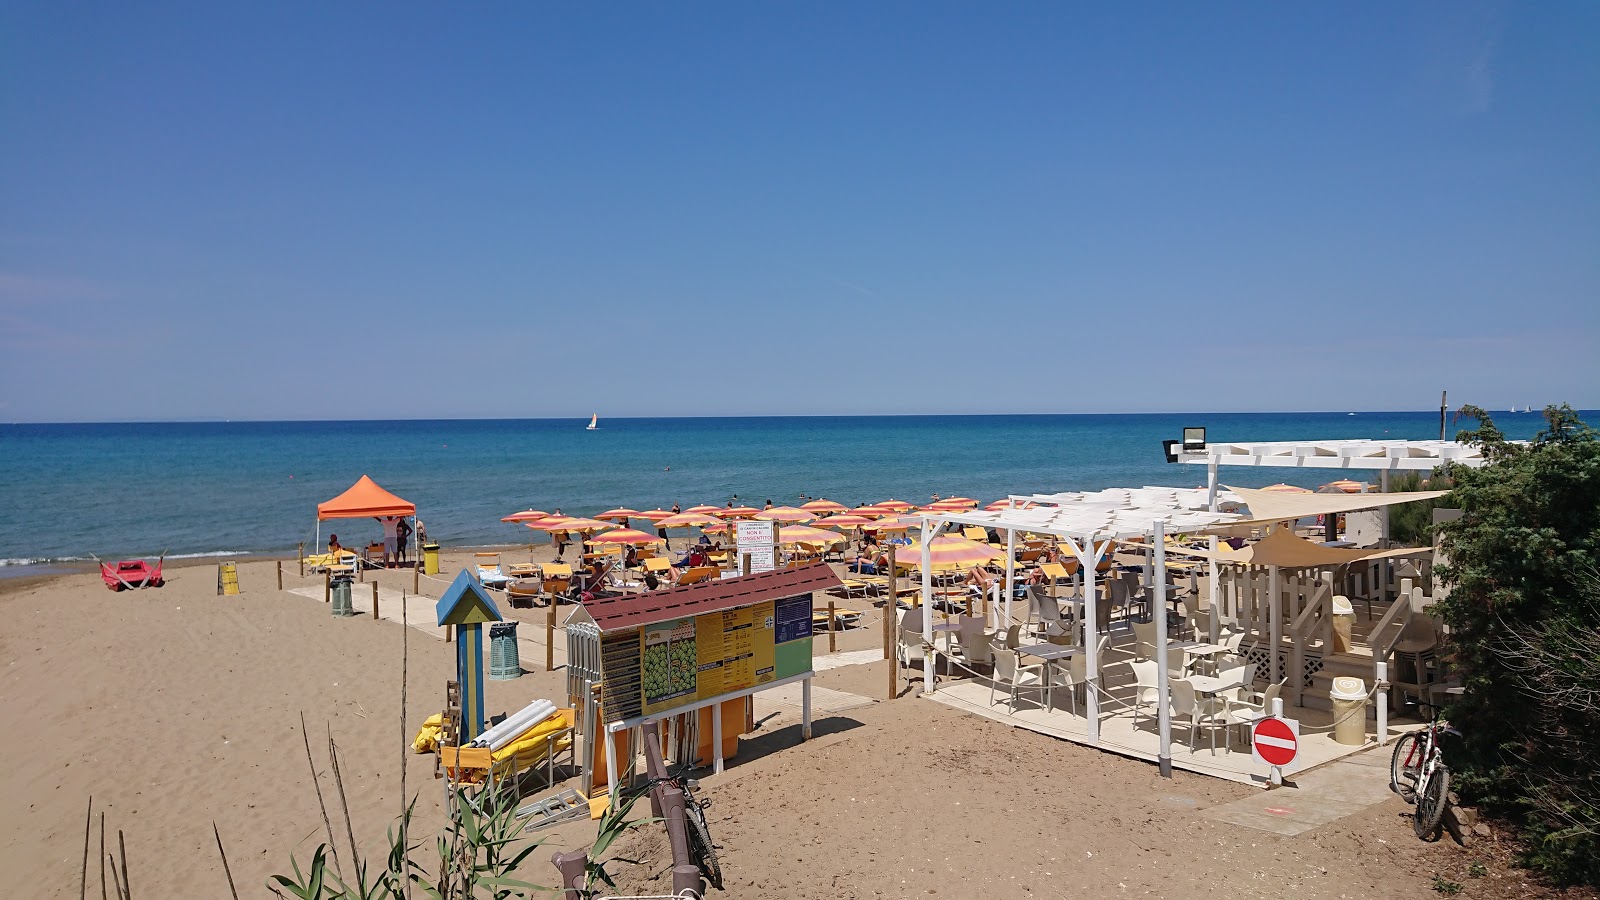 Foto de Spiaggia di Rimigliano ubicado en área natural